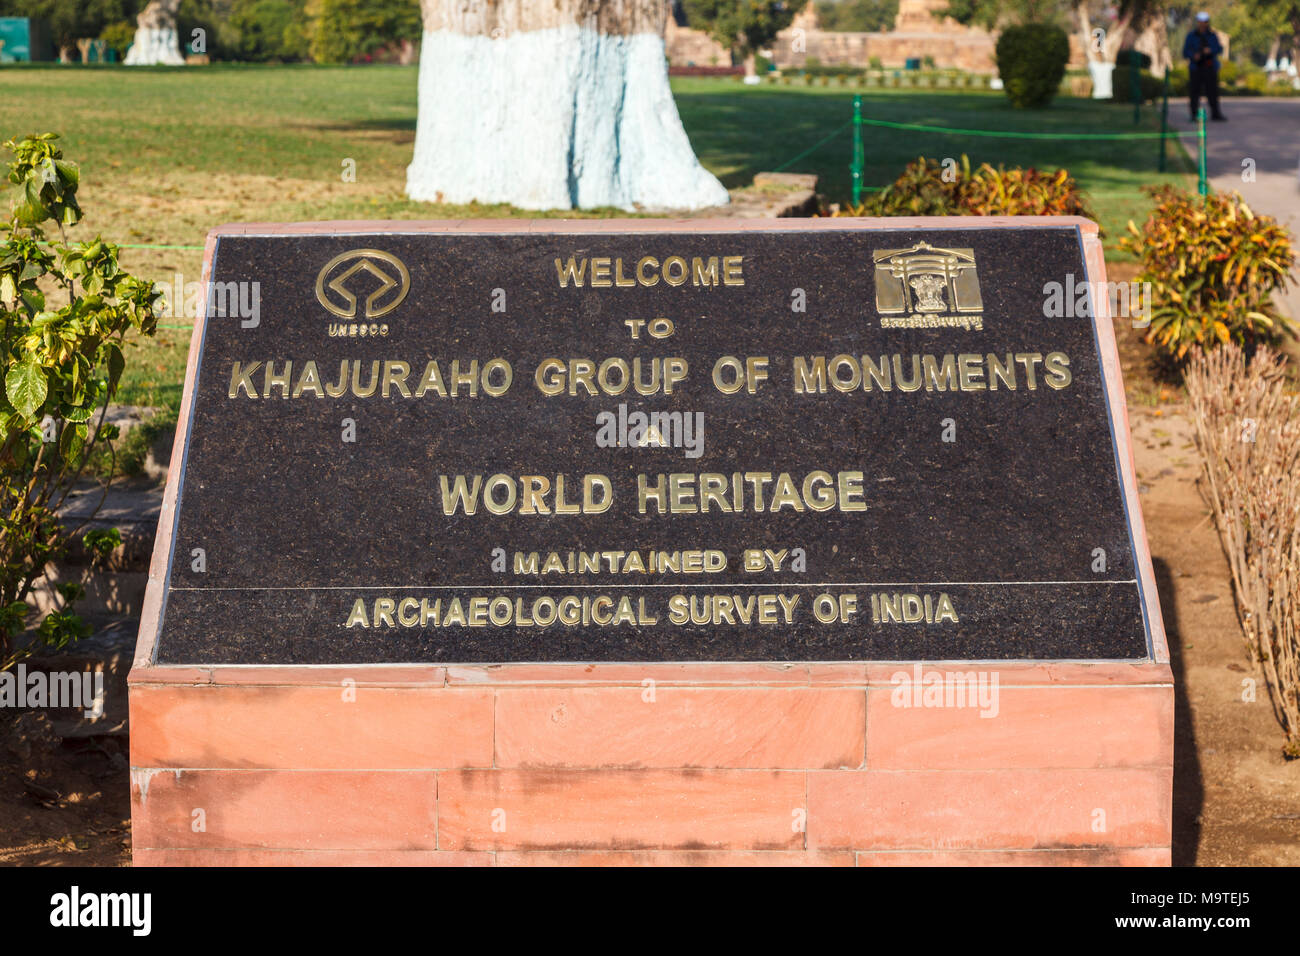 Eingangsschild durch die Archäologische übersicht Indien: "Willkommen in Khajuraho Gruppe von Denkmälern', Khajuraho, Madhya Pradesh, Indien Stockfoto